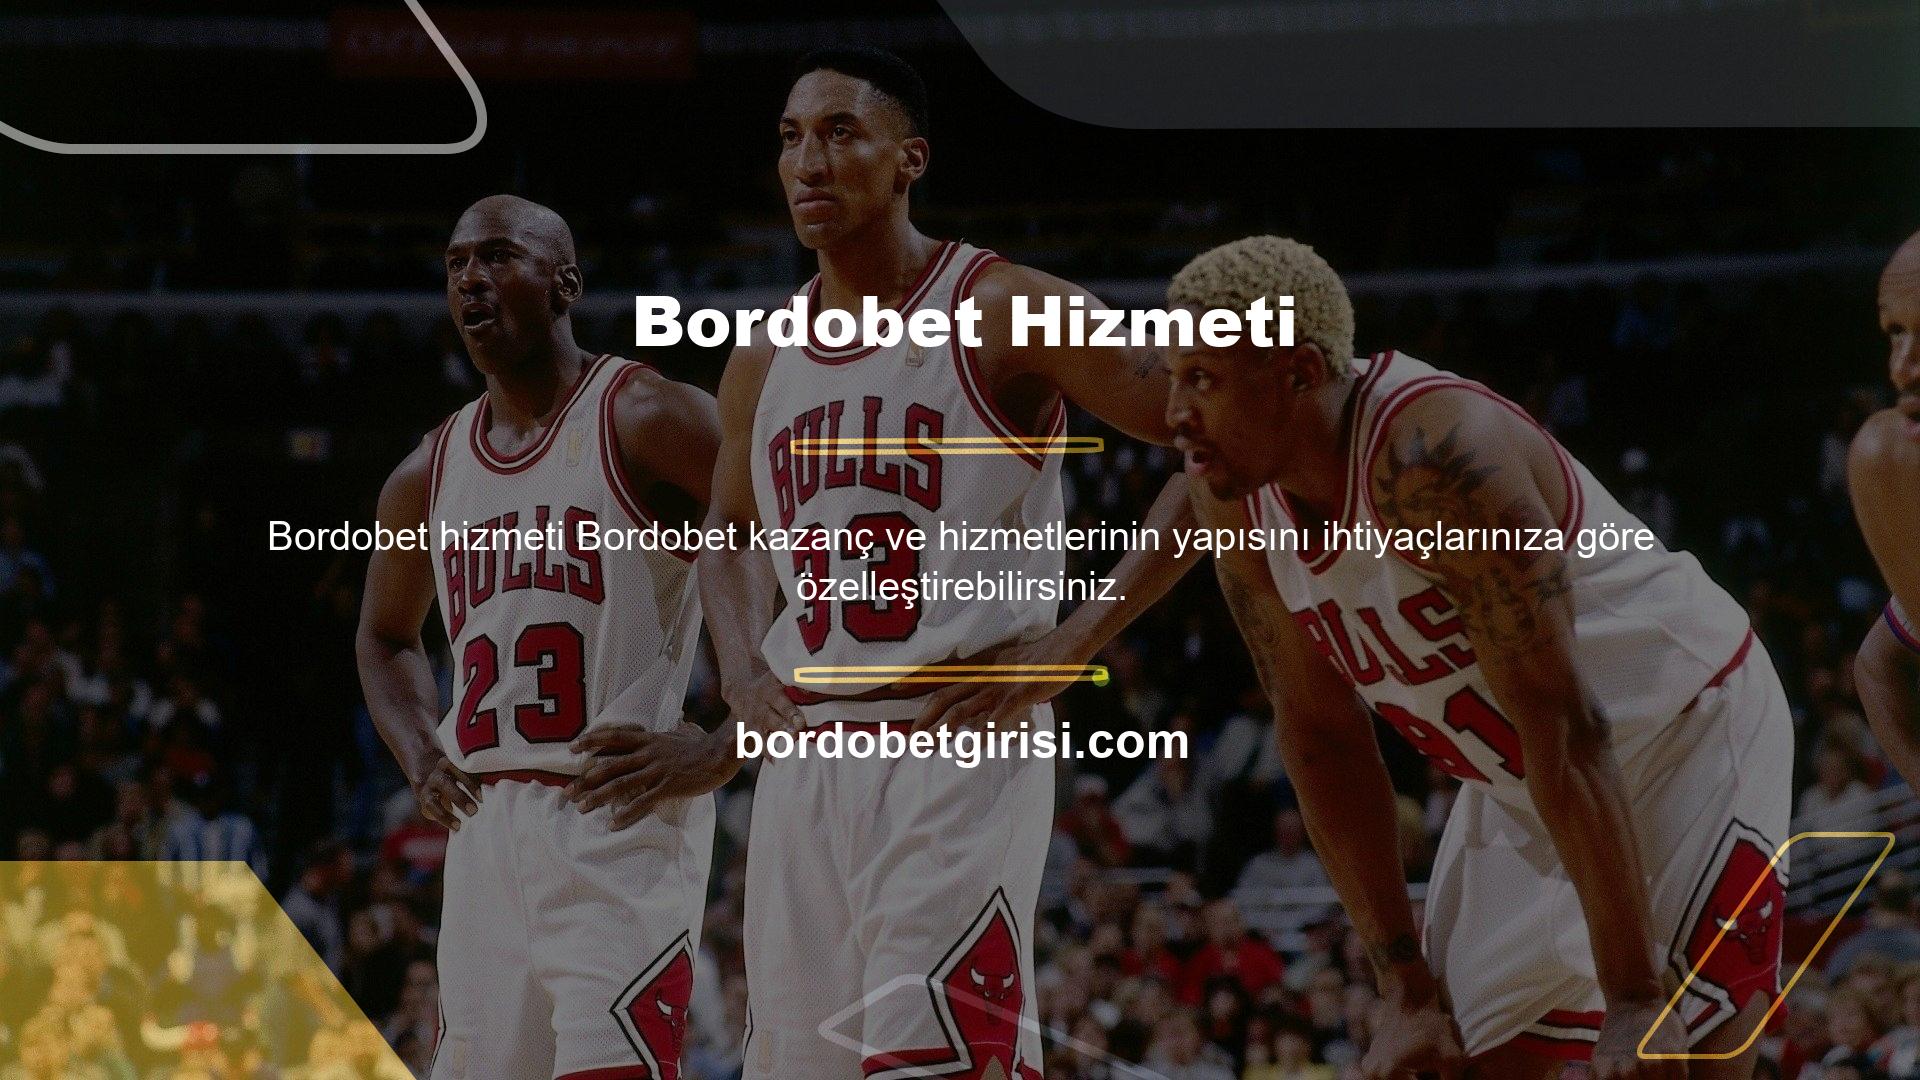 Bordobet web sitesini ziyaret etmeye devam ettiğiniz takdirde mevcut tüm özelliklerden de yararlanabilirsiniz